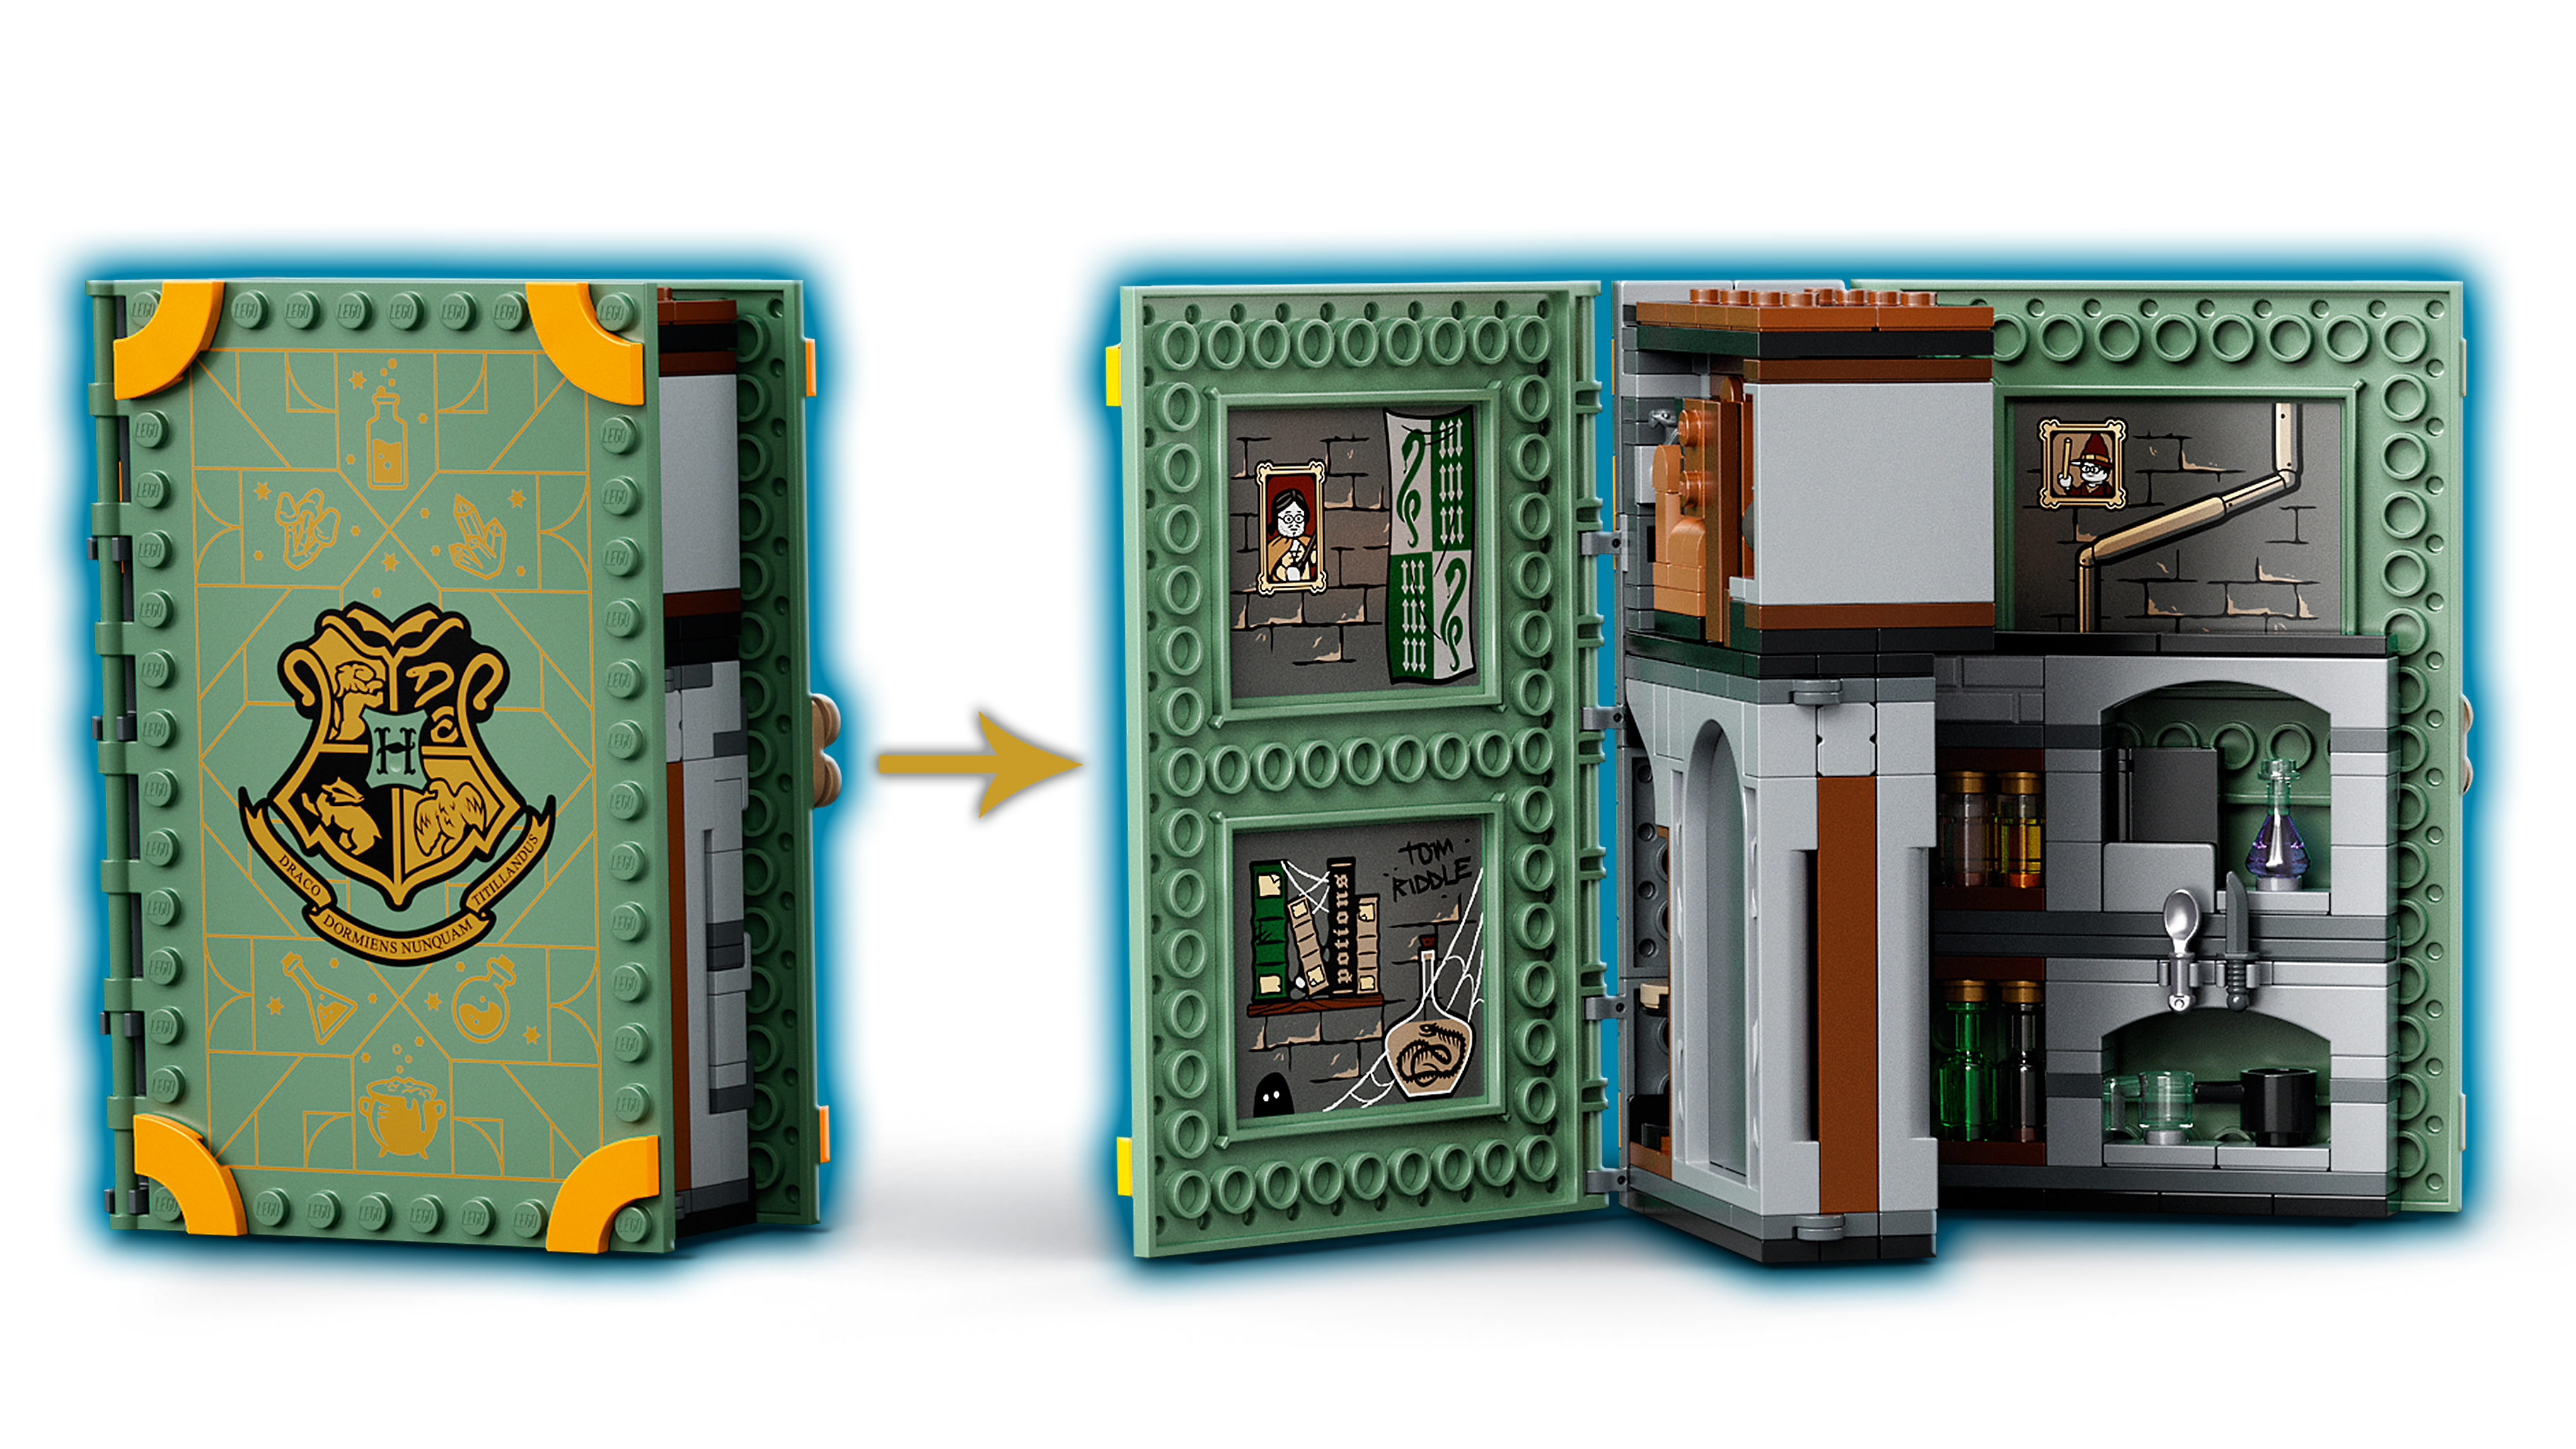 Novo conjunto Expresso Hogwarts de Lego - EP GRUPO  Conteúdo - Mentoria  - Eventos - Marcas e Personagens - Brinquedo e Papelaria